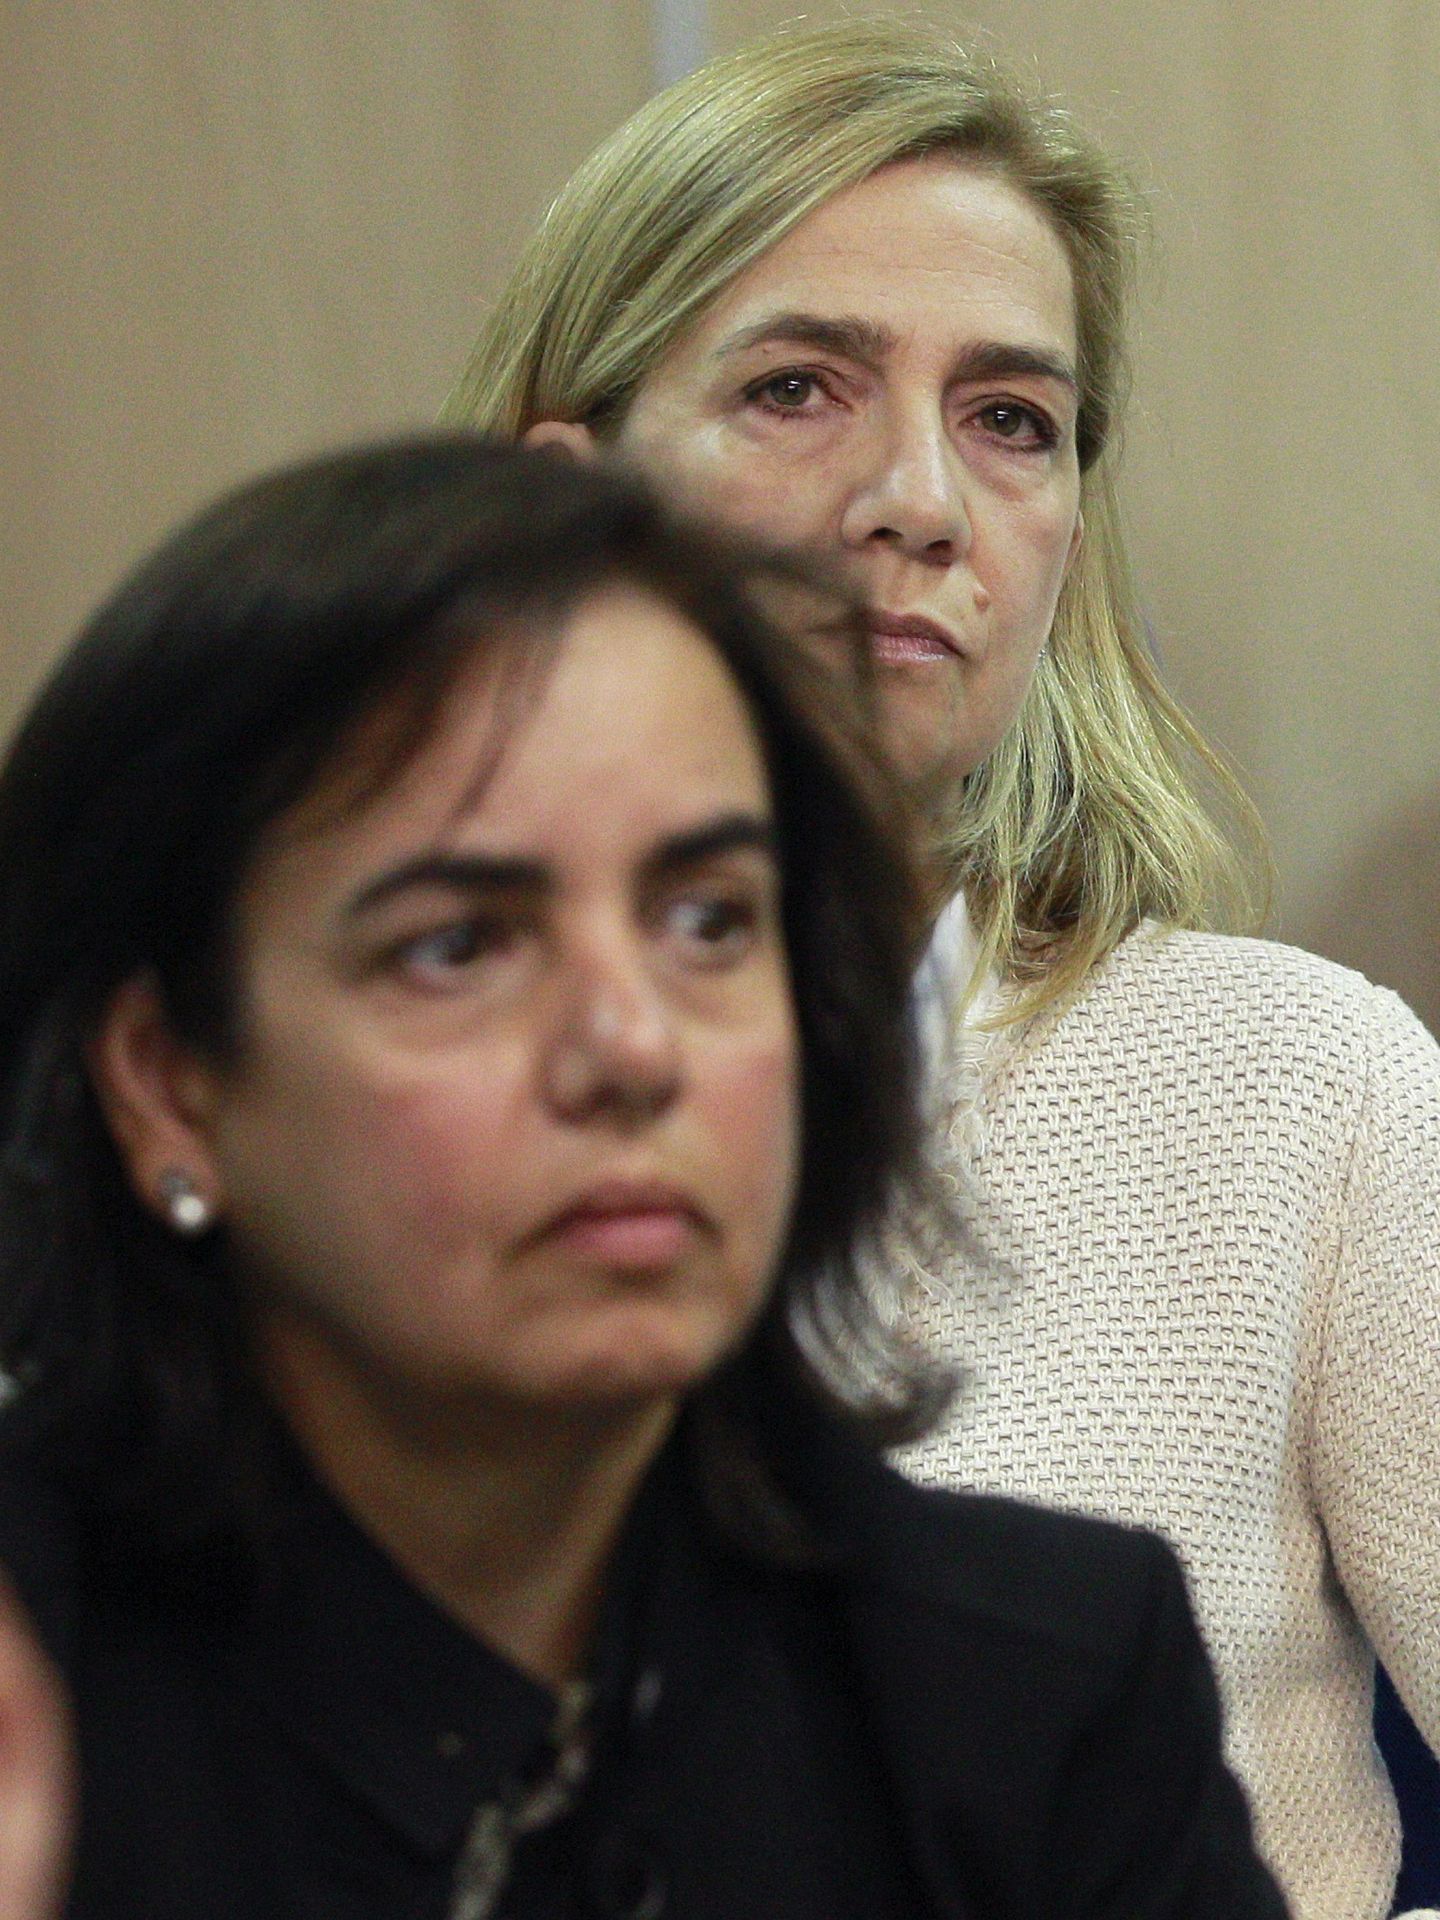 La infanta Cristina y Ana Tejeiro asisten sentadas una delante de la otra al juicio por el caso Nóos. (EFE)